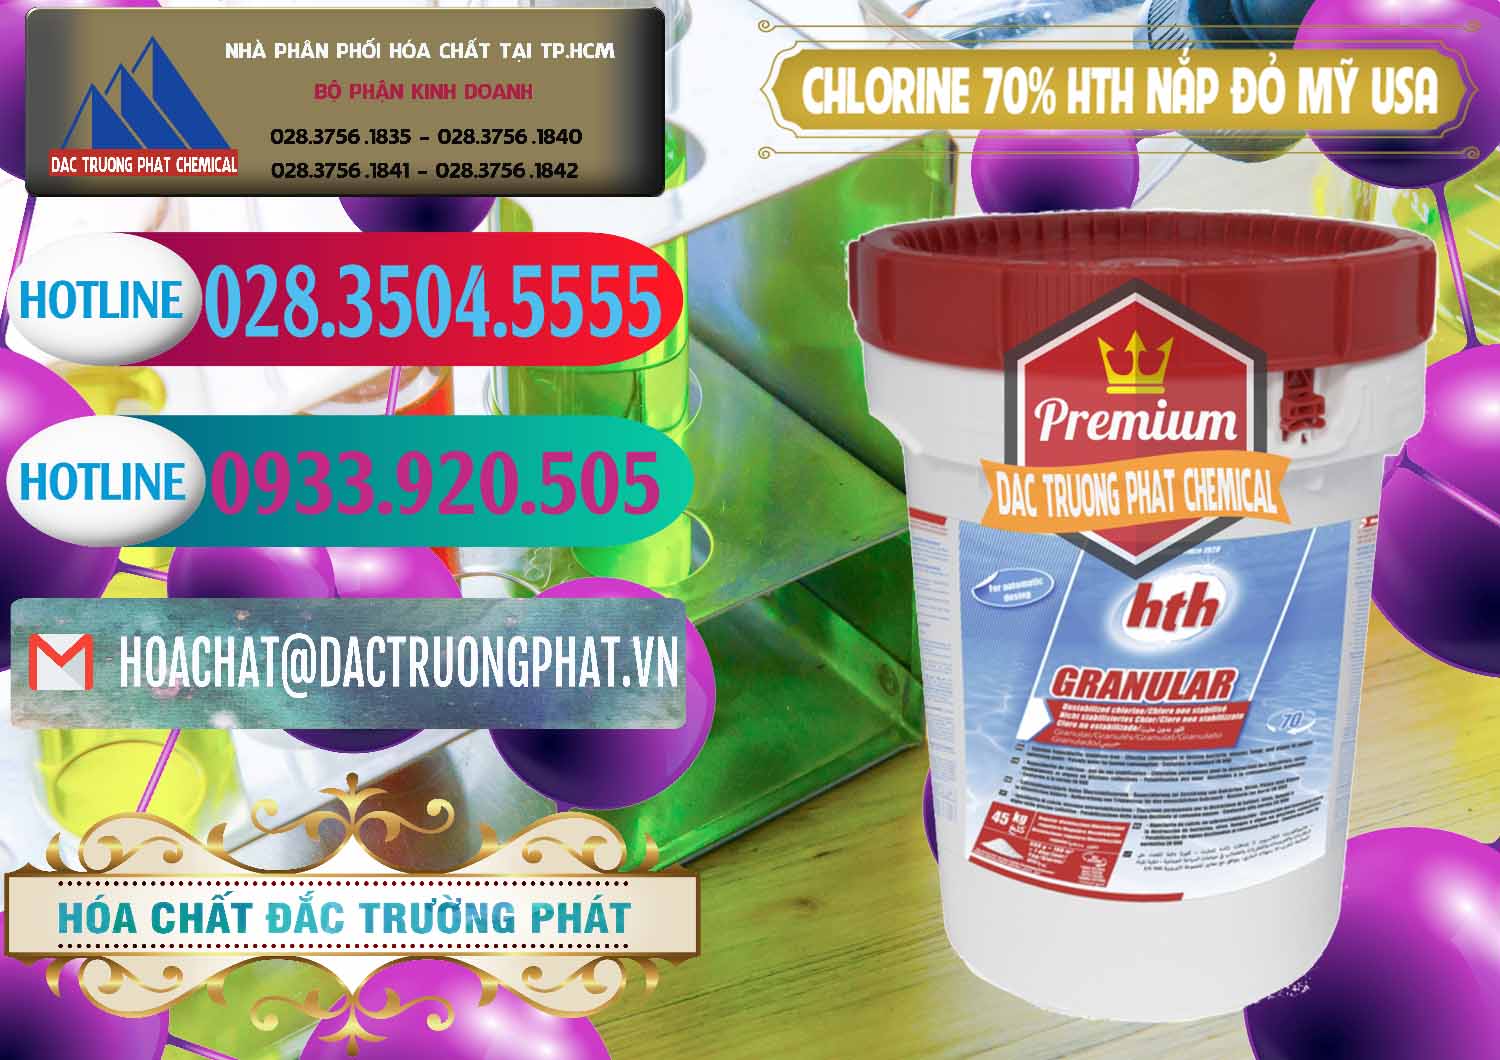 Đơn vị chuyên phân phối và bán Clorin – Chlorine 70% HTH Nắp Đỏ Mỹ Usa - 0244 - Cty chuyên bán & phân phối hóa chất tại TP.HCM - truongphat.vn